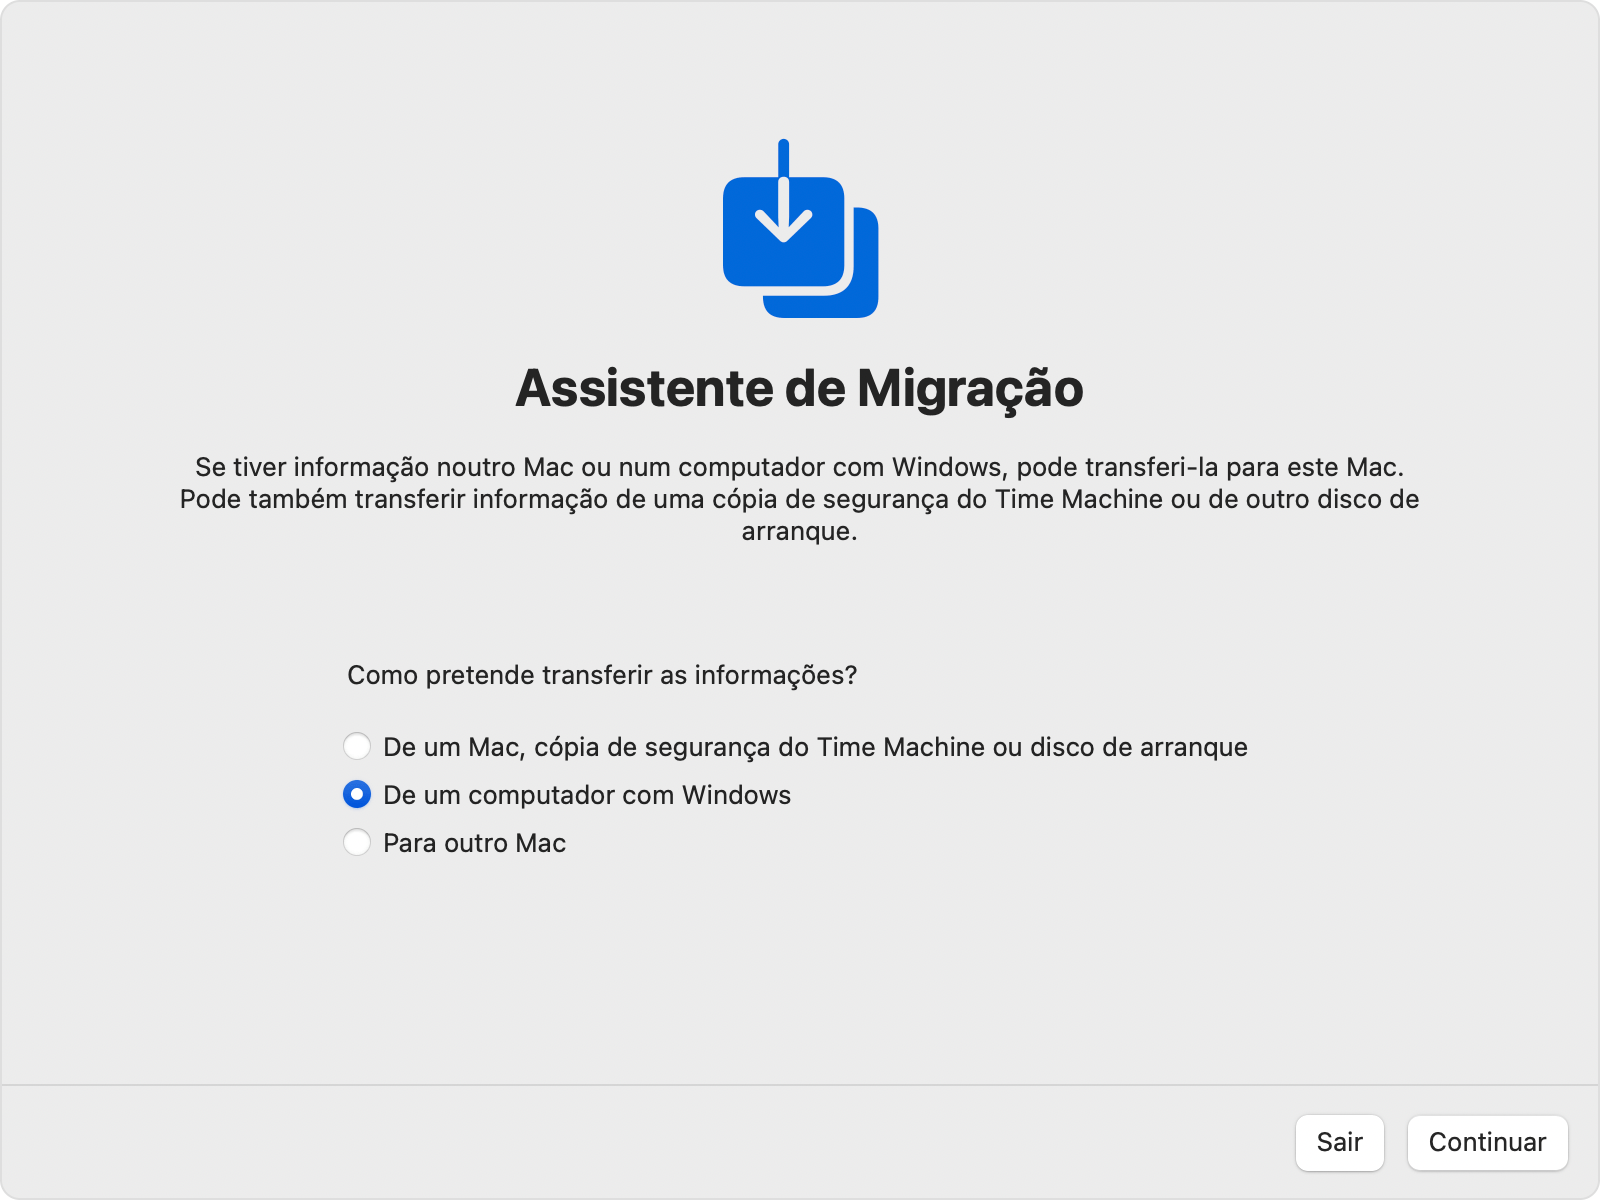 Assistente de migração no Mac: Transferir "De um computador com Windows"